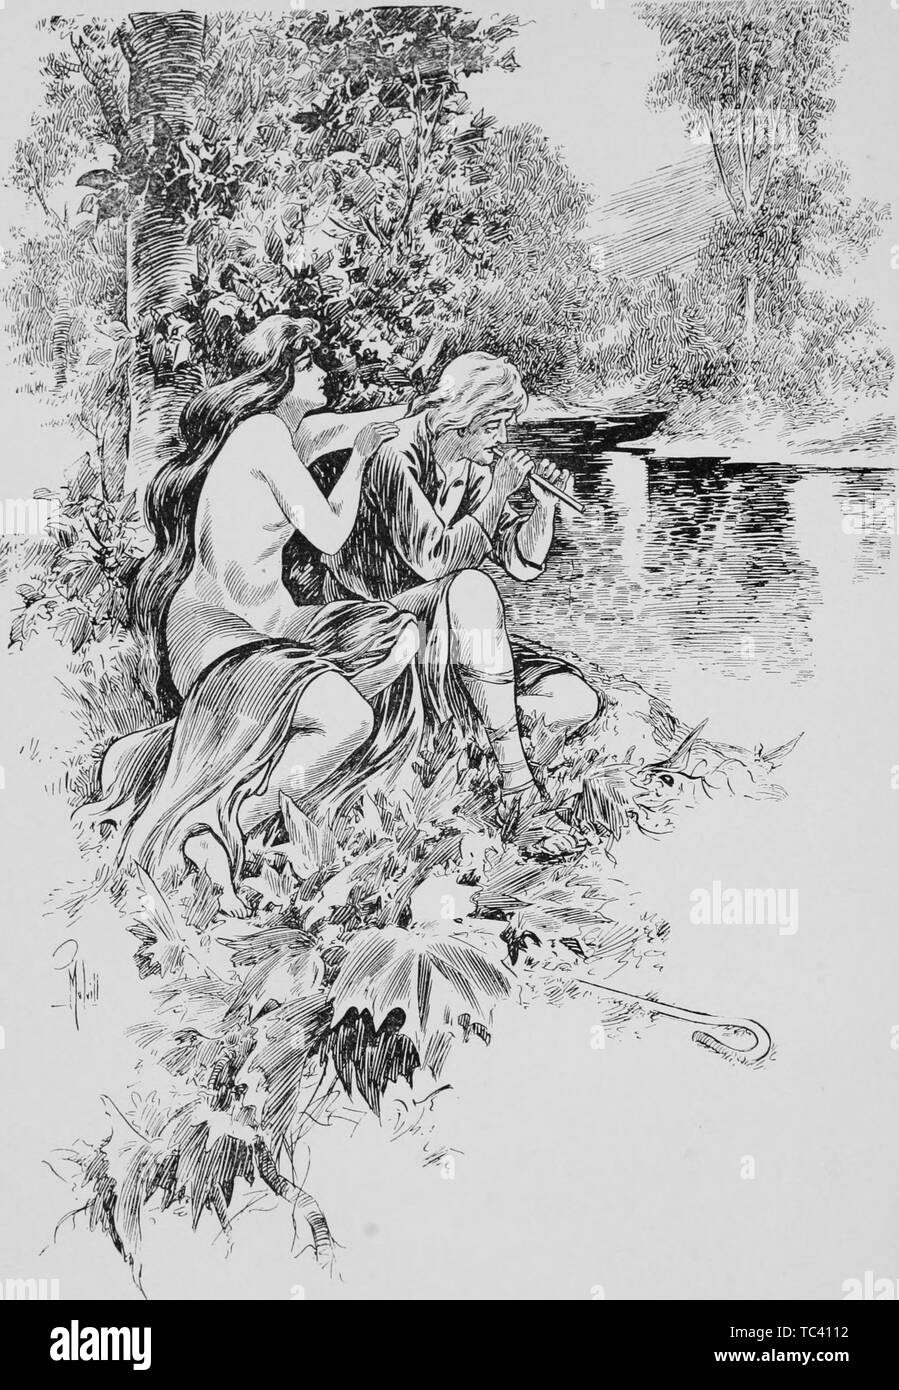 Paire d'amants gravée sur une rive de la rivière, du livre 'O' Lilts Love' par Judd Mortimer Lewis, 1906. Avec la permission de Internet Archive. () Banque D'Images